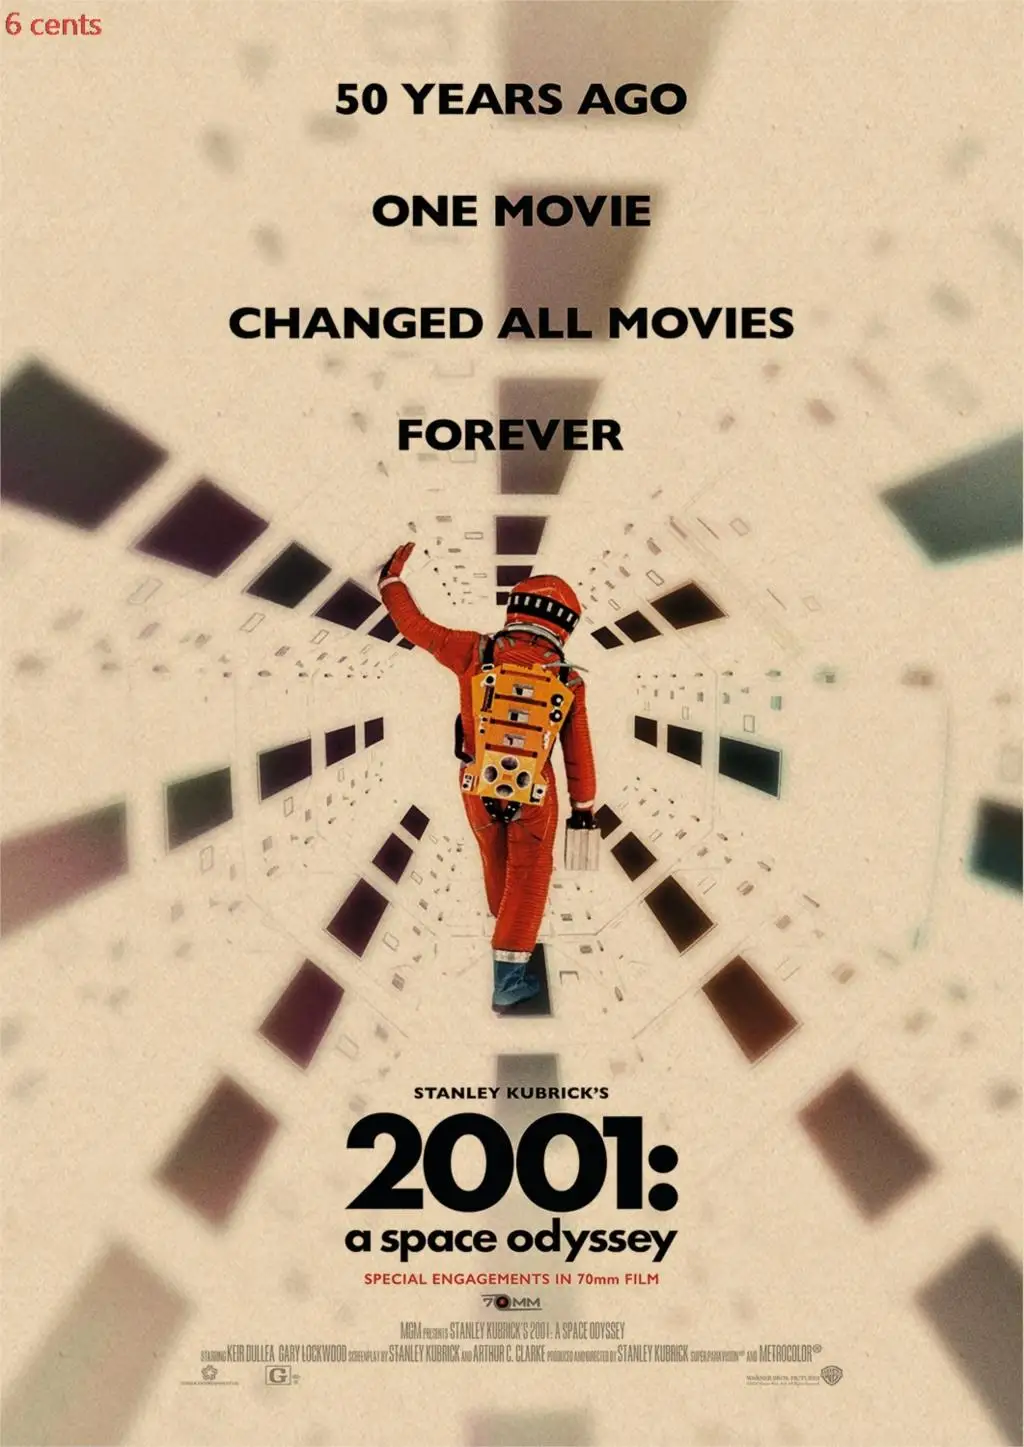 Kubrick серия кинофильма/«Заводной Апельсин»/2001 космический роуминг/постер фильма крафт-бумага плакат, плакат в стиле ретро